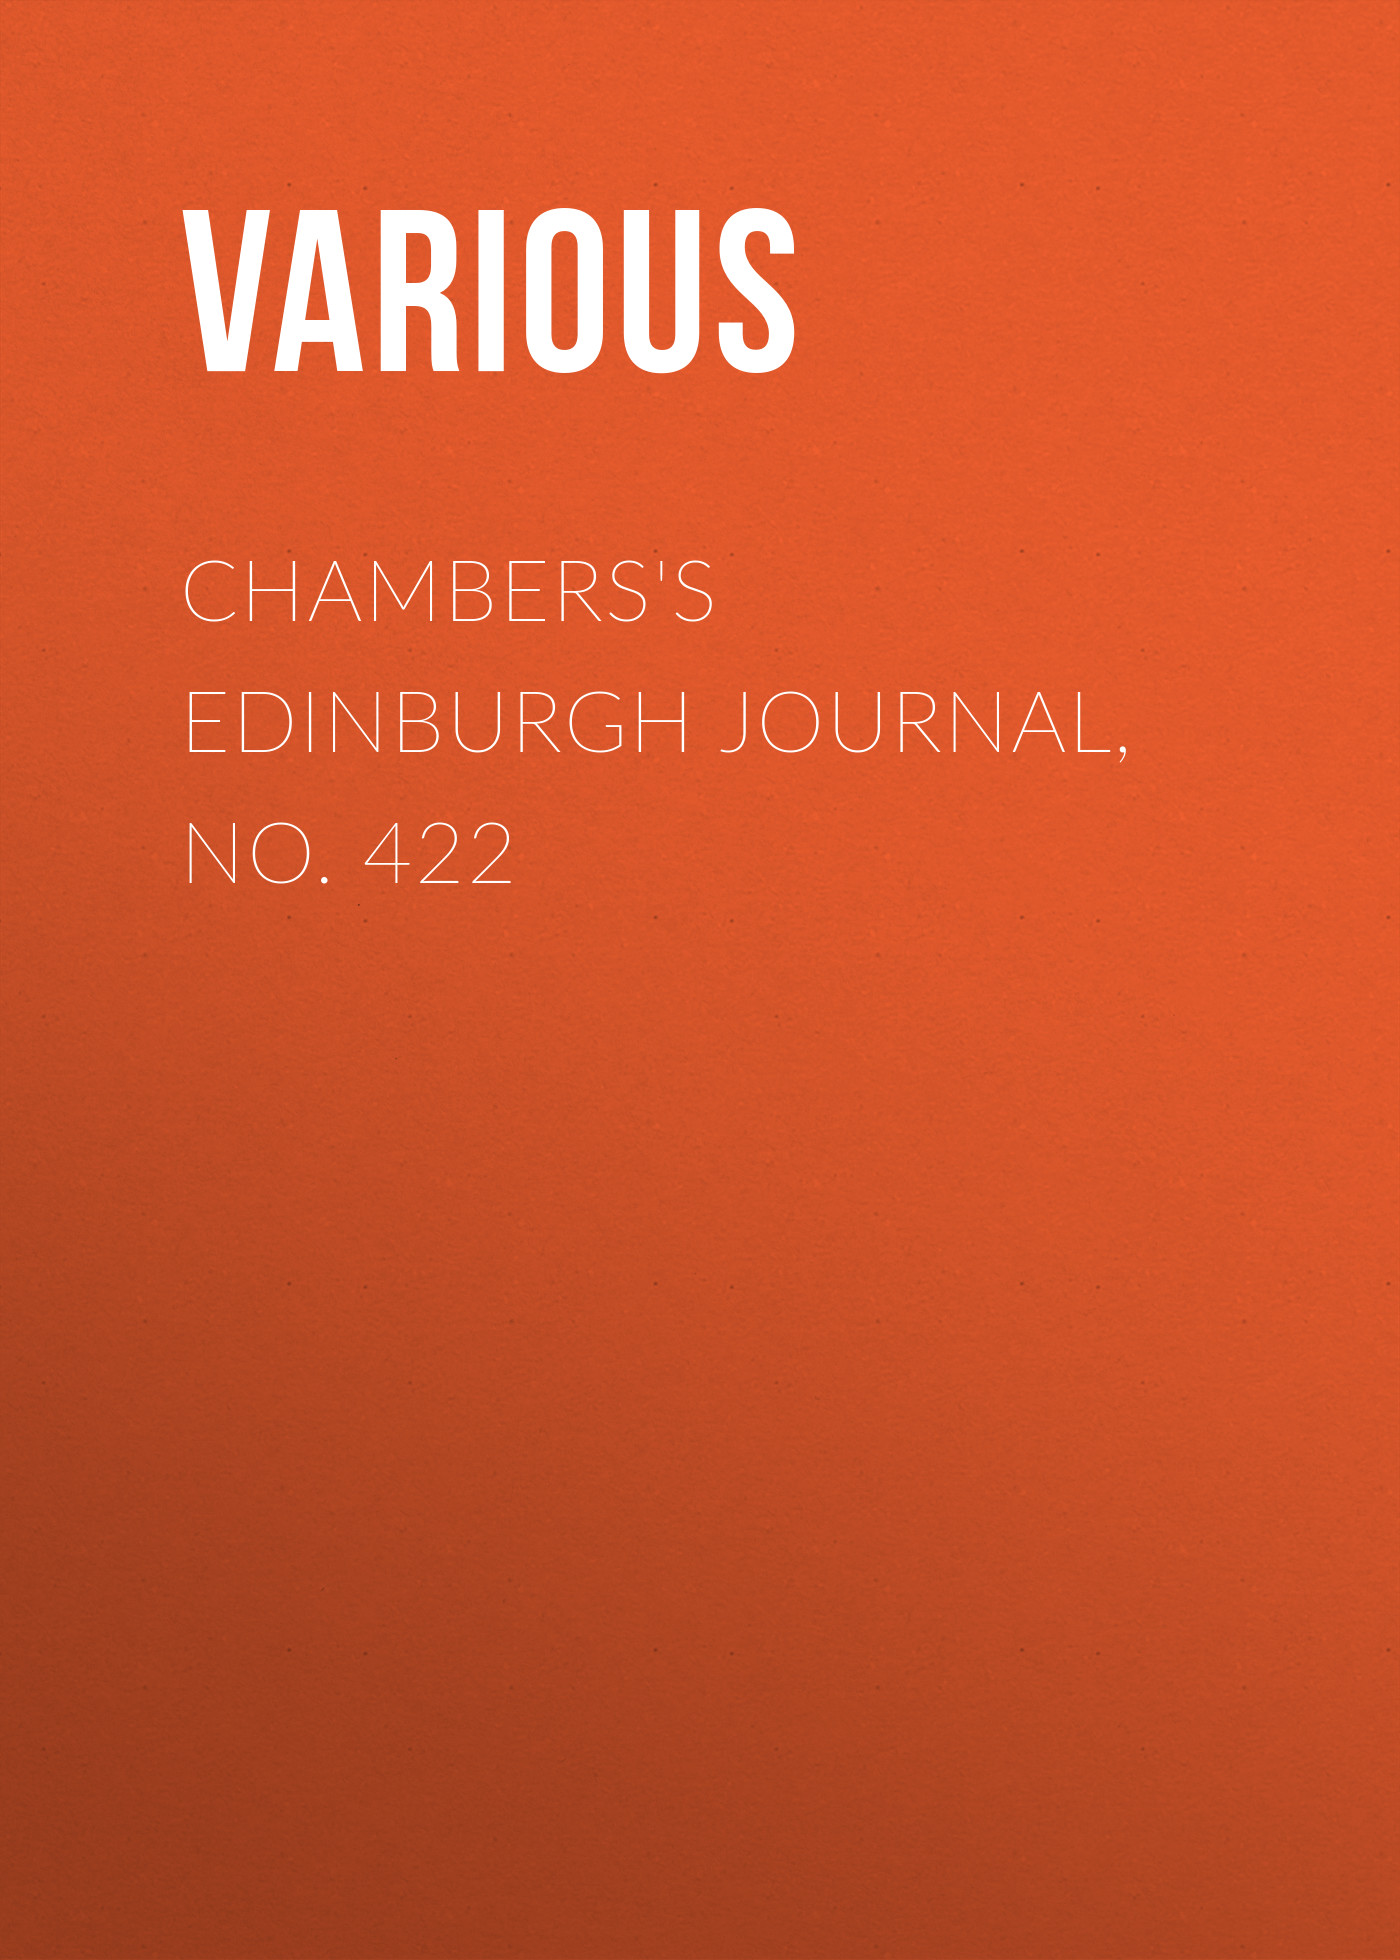 Книга Chambers's Edinburgh Journal, No. 422 из серии , созданная  Various, может относится к жанру Зарубежная старинная литература, Журналы, Зарубежная образовательная литература. Стоимость электронной книги Chambers's Edinburgh Journal, No. 422 с идентификатором 35492143 составляет 0 руб.